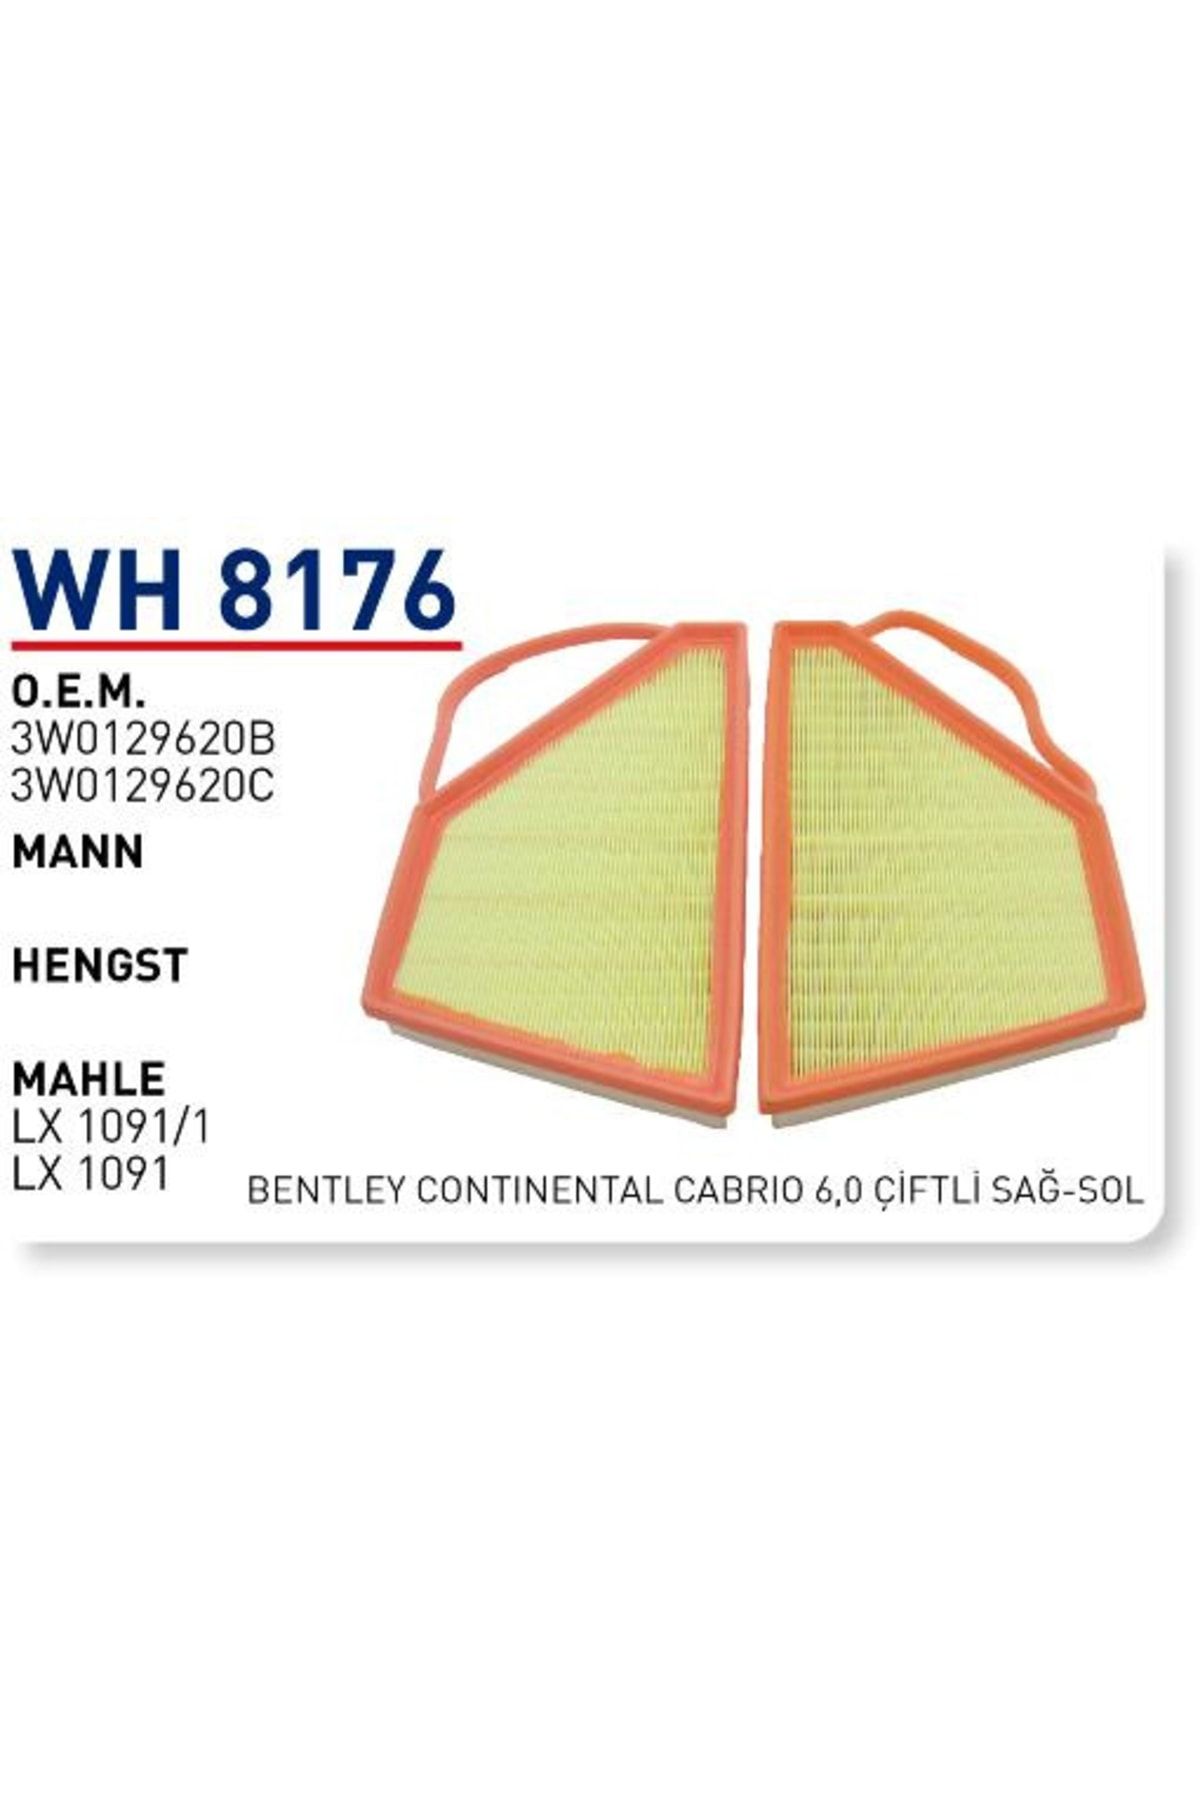 WUNDER Wh8176 Hava Filtresi Uyumlu - Bentley Continental Cabrio 6,0 Çiftli Sağ Sol